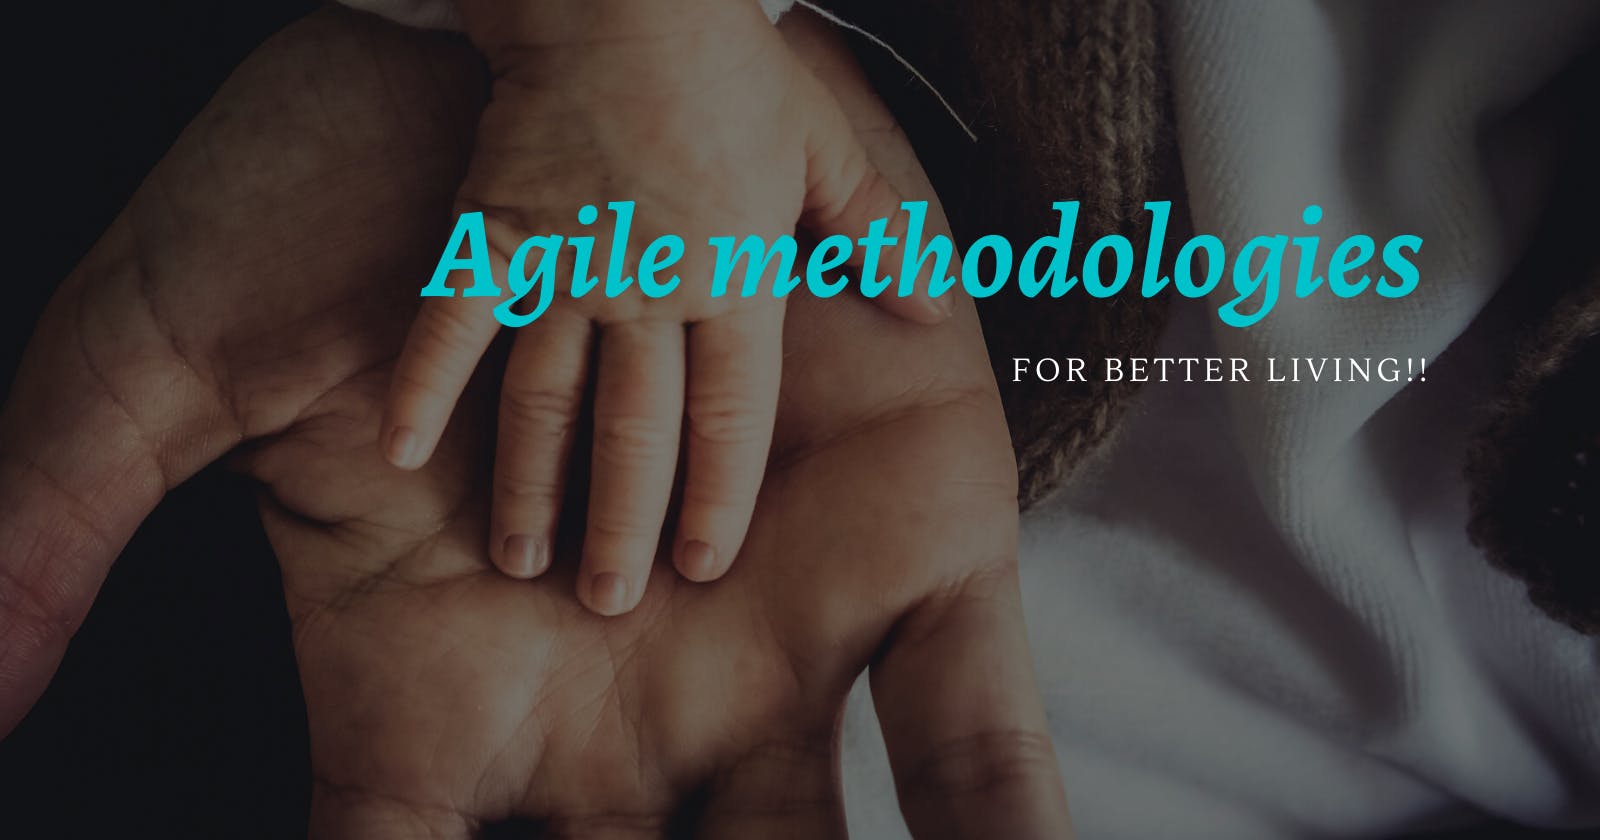 Agile methodologies for Better living!